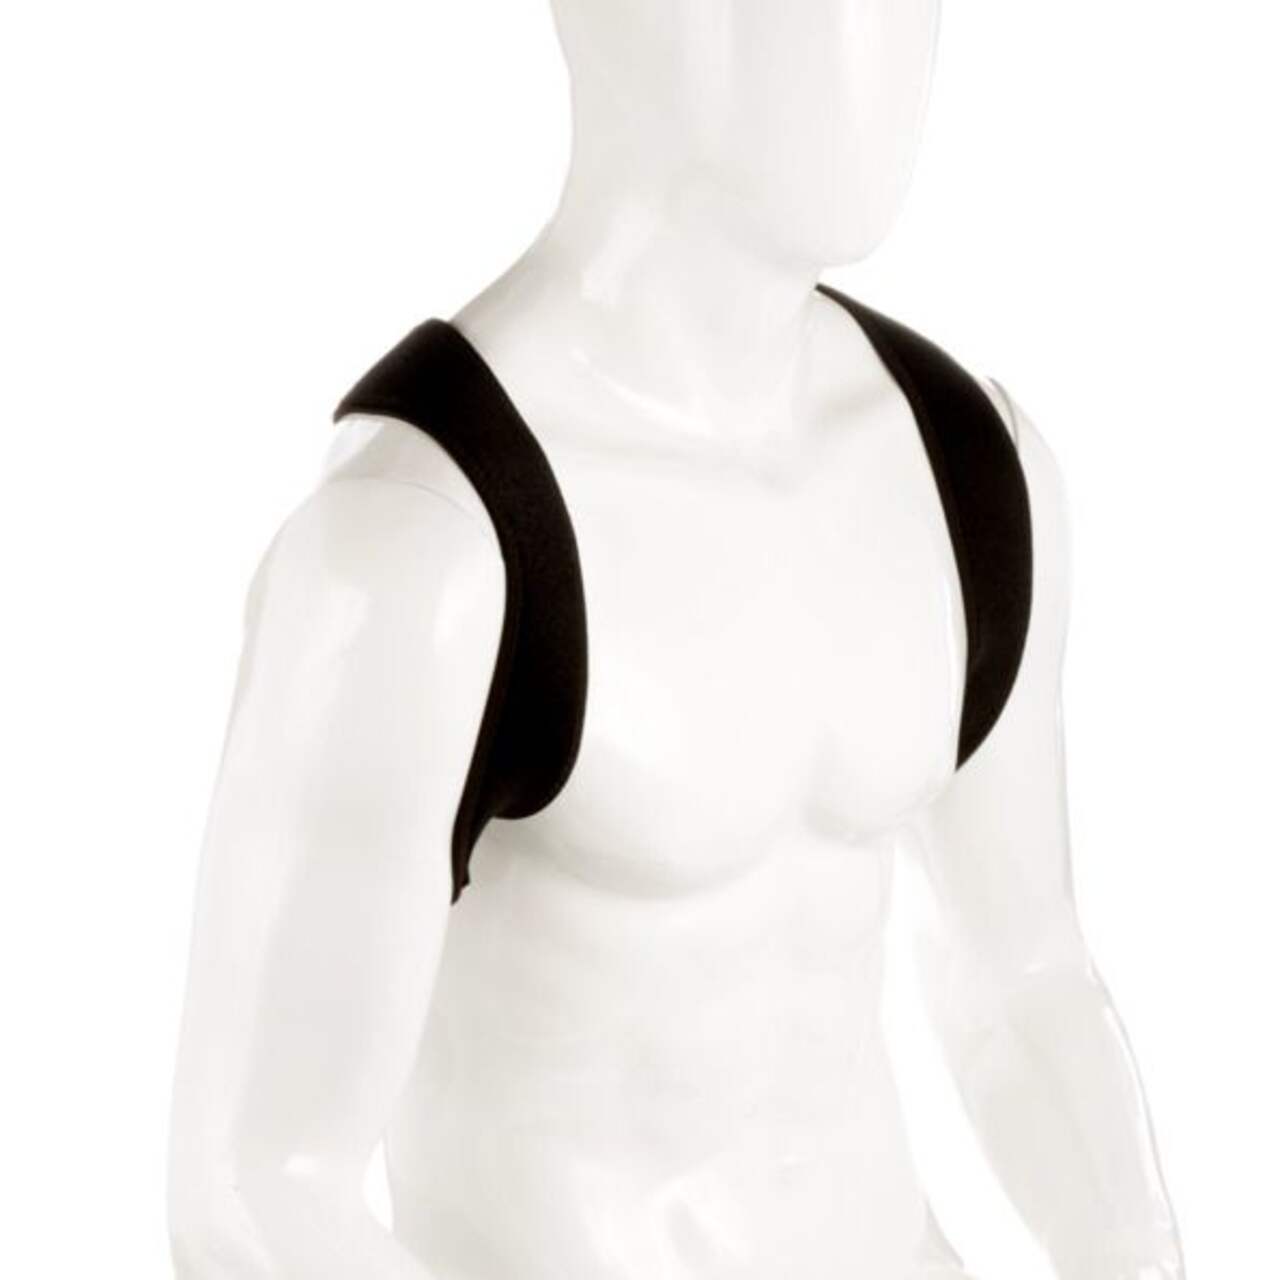 CXZD Women Back Brace Support Belt Orthopedic Back Posture Corrector Brace  Posture Shoulder Corrector Back Straightener Shaper